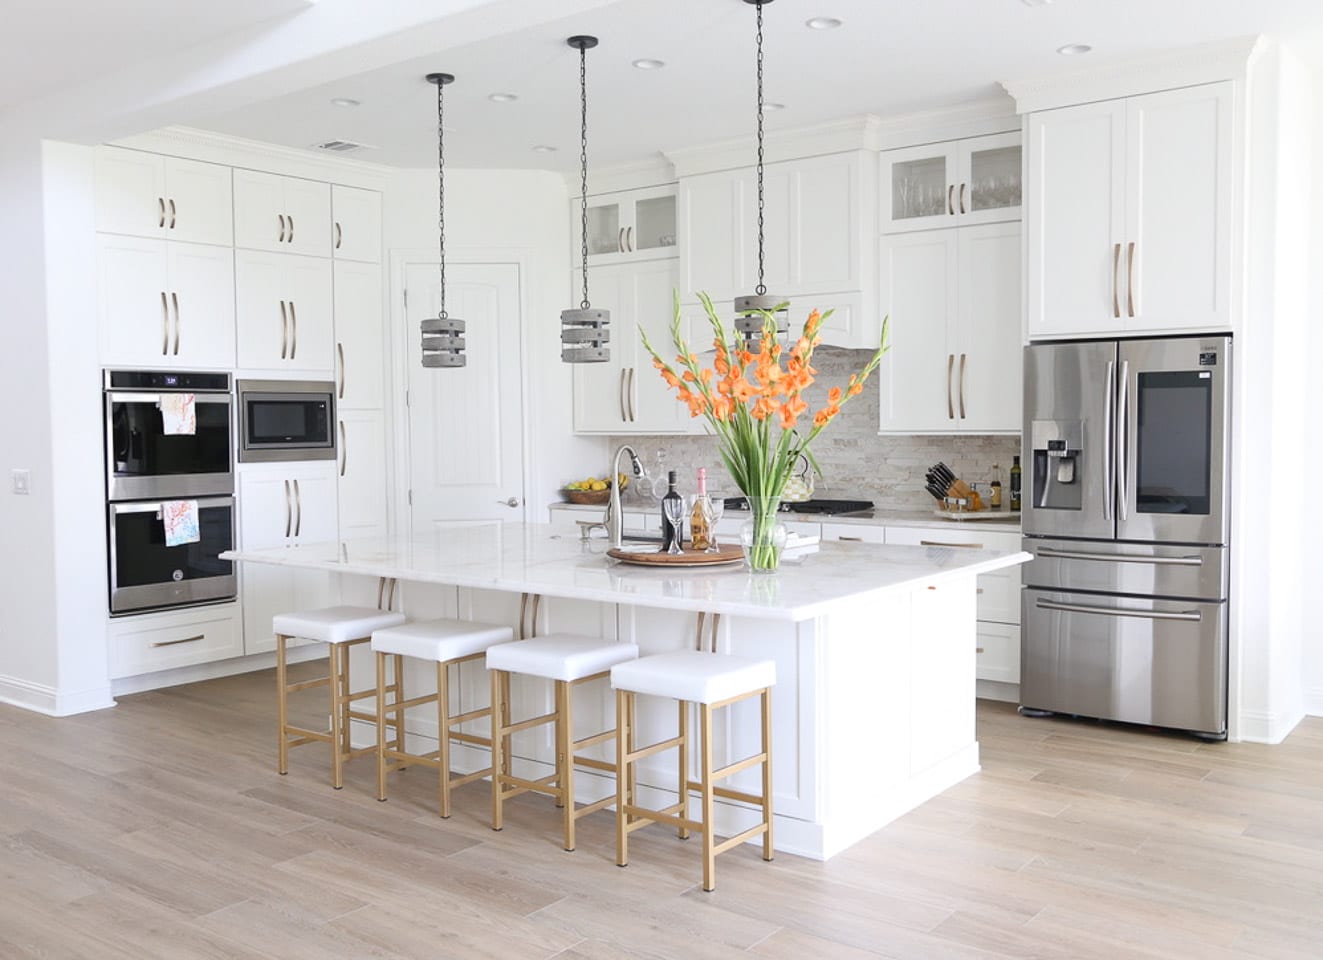 Leander Transitional White Kitchen With Stone Backsplash - UB Kitchens ...